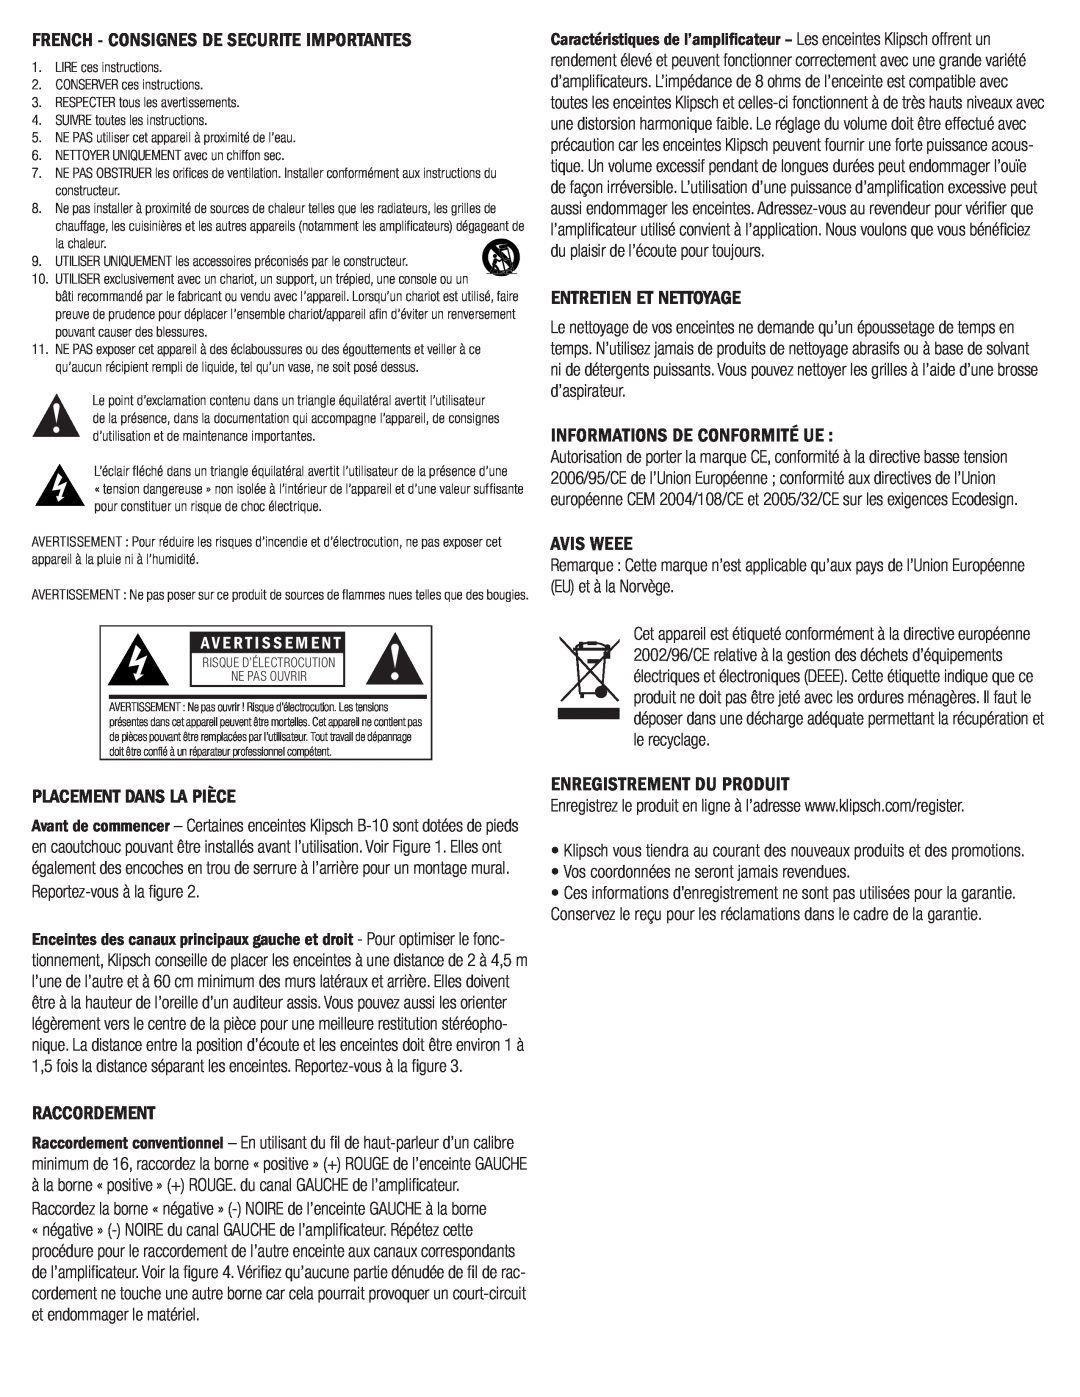 Klipsch B-10 French - Consignes De Securite Importantes, Entretien Et Nettoyage, Informations De Conformité Ue, Avis Weee 